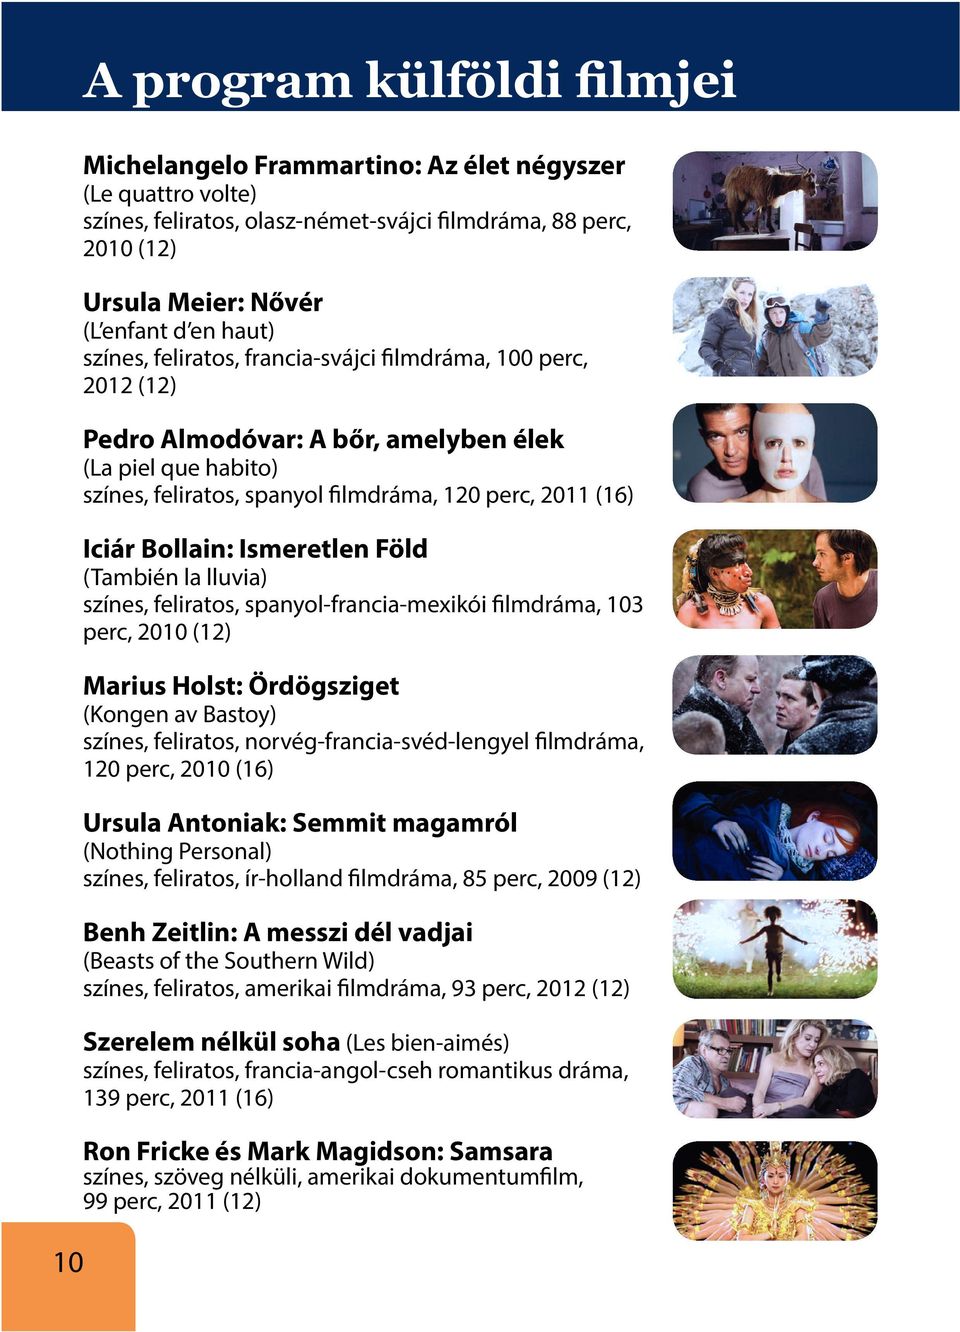 (También la lluvia) színes, feliratos, spanyol-francia-mexikói filmdráma, 103 perc, 2010 (12) Marius Holst: Ördögsziget (Kongen av Bastoy) színes, feliratos, norvég-francia-svéd-lengyel filmdráma,